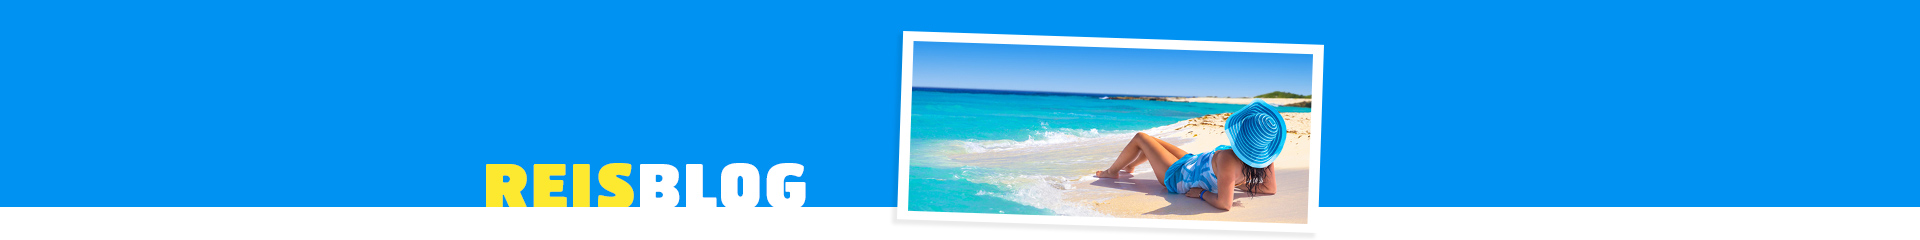 Vrouw ligt op het witte strand, uitkijkend naar de prachtige azuurblauwe zee.